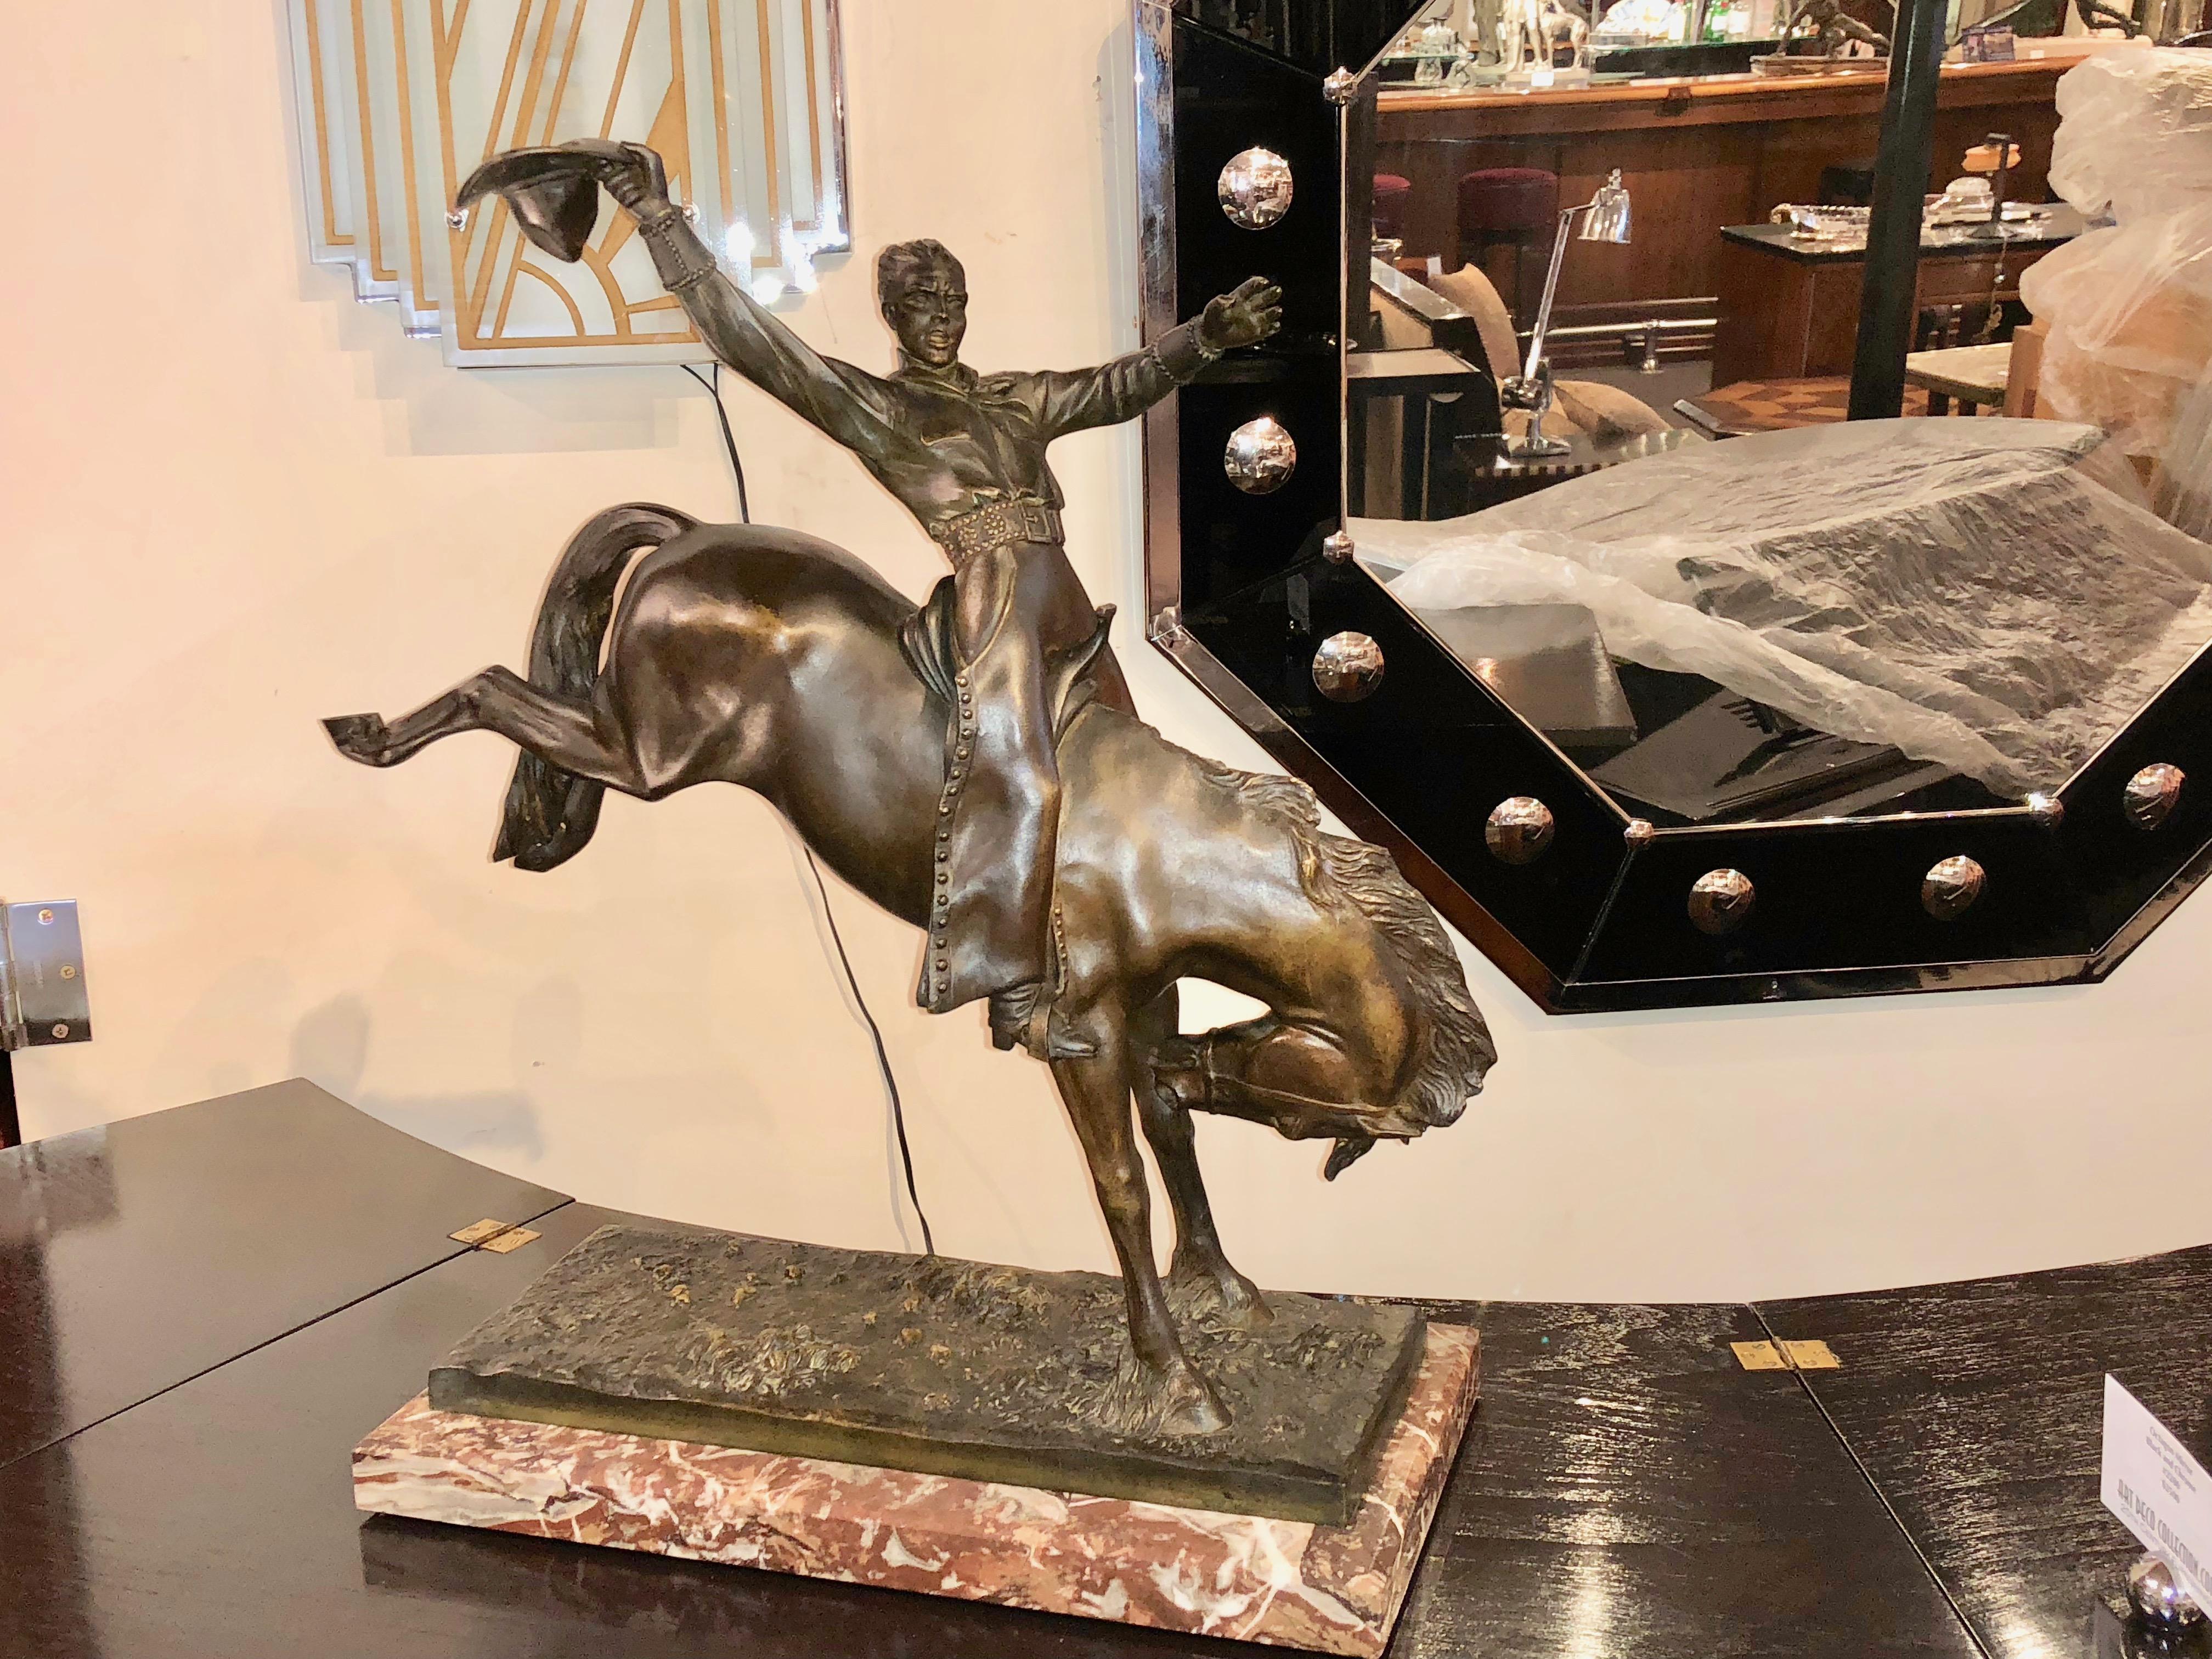 Eine seltene große Bronzeskulptur von Maurice Guiraud Rivière & Etling Paris, die die Figur eines Cowboys beim Rodeo auf einem bockenden Bronco darstellt.
Atemberaubende, hochwertige Etling-Edition mit detaillierter Ziselierung. Echte braune Patina